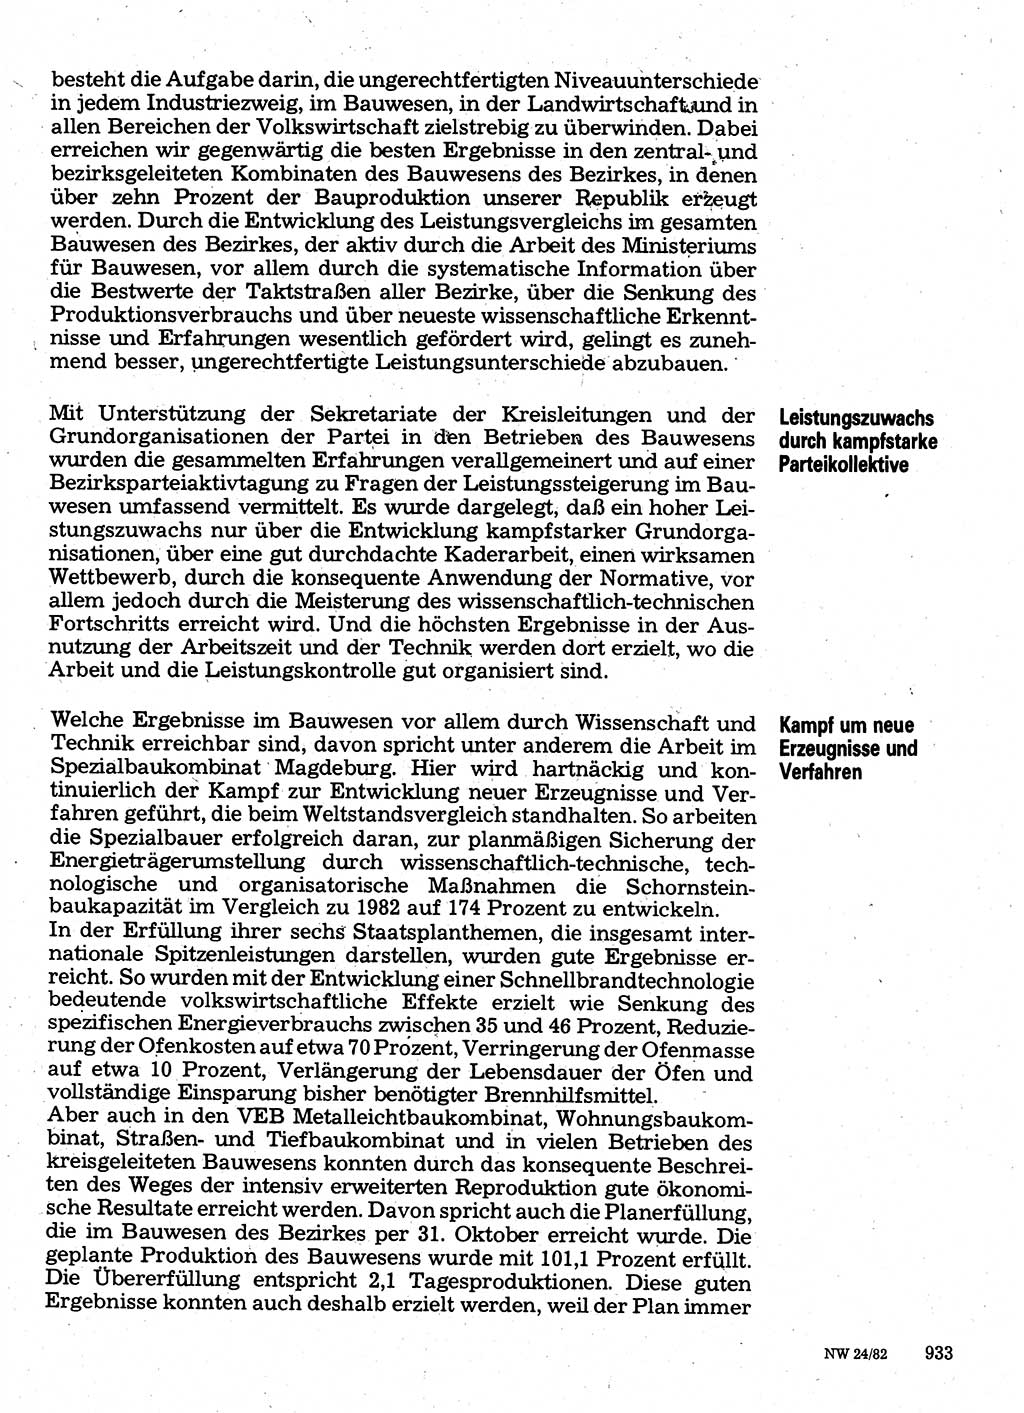 Neuer Weg (NW), Organ des Zentralkomitees (ZK) der SED (Sozialistische Einheitspartei Deutschlands) für Fragen des Parteilebens, 37. Jahrgang [Deutsche Demokratische Republik (DDR)] 1982, Seite 933 (NW ZK SED DDR 1982, S. 933)